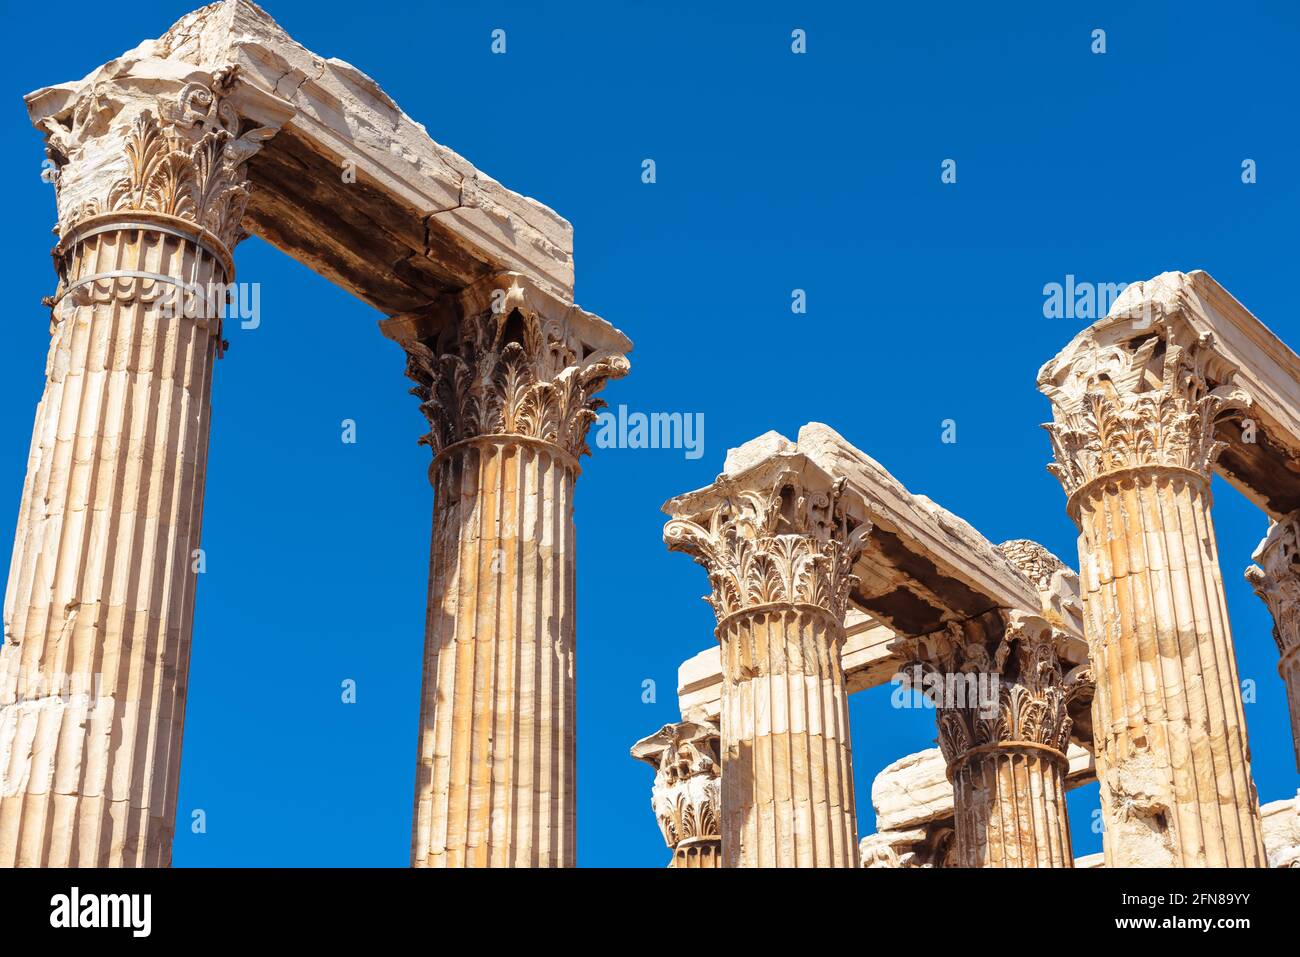 Antiker Tempel des olympischen Zeus auf blauem Himmel Hintergrund, Athen, Griechenland. Korinthische Säulen sind Überreste des klassischen griechischen Gebäudes. Dieses alte Denkmal Stockfoto